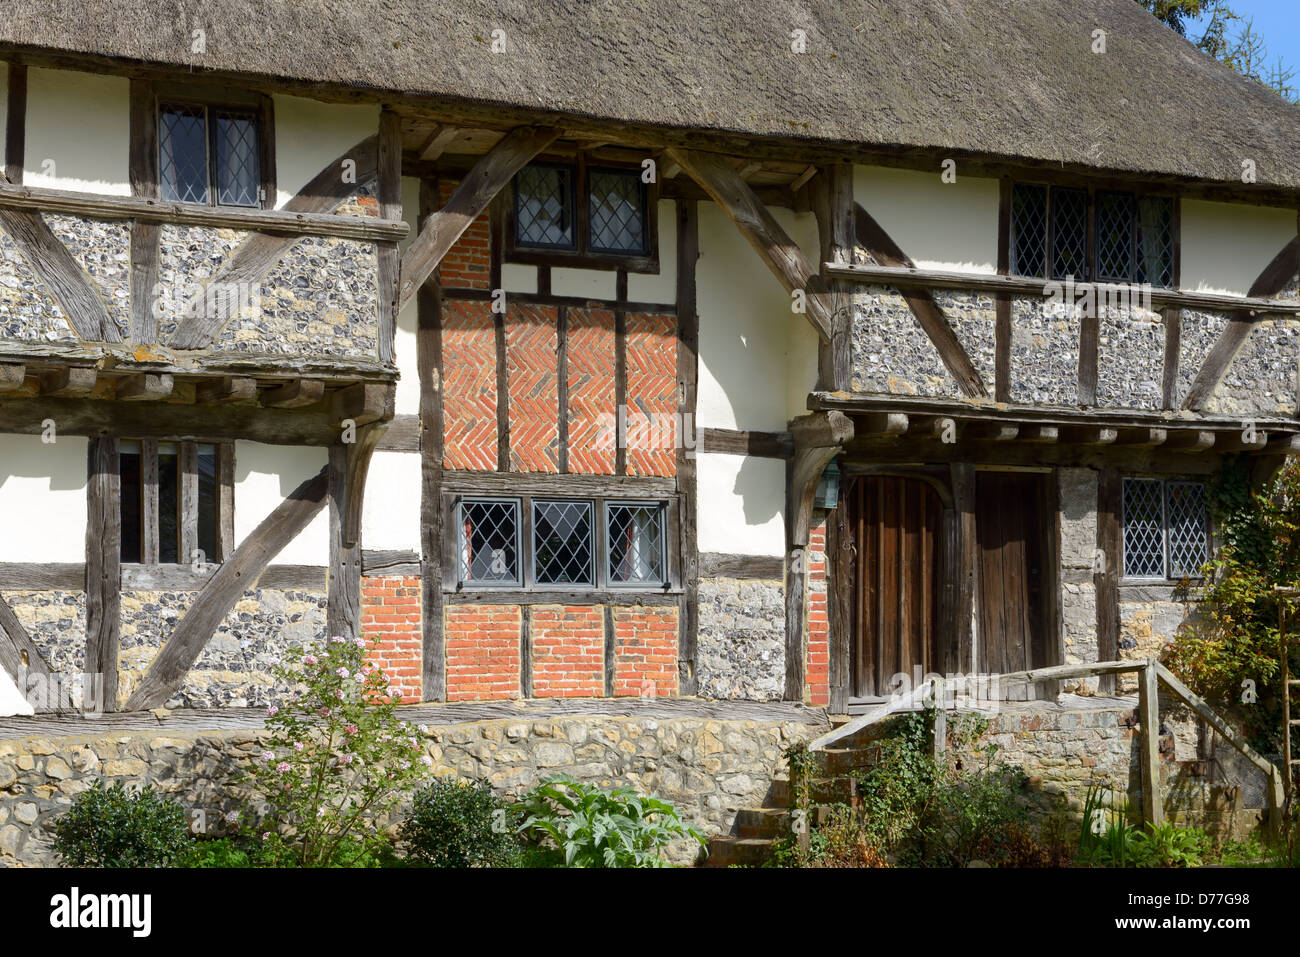 Detailansicht des Yeoman's House im Dorf Bignor, West Sussex, England, Großbritannien Stockfoto